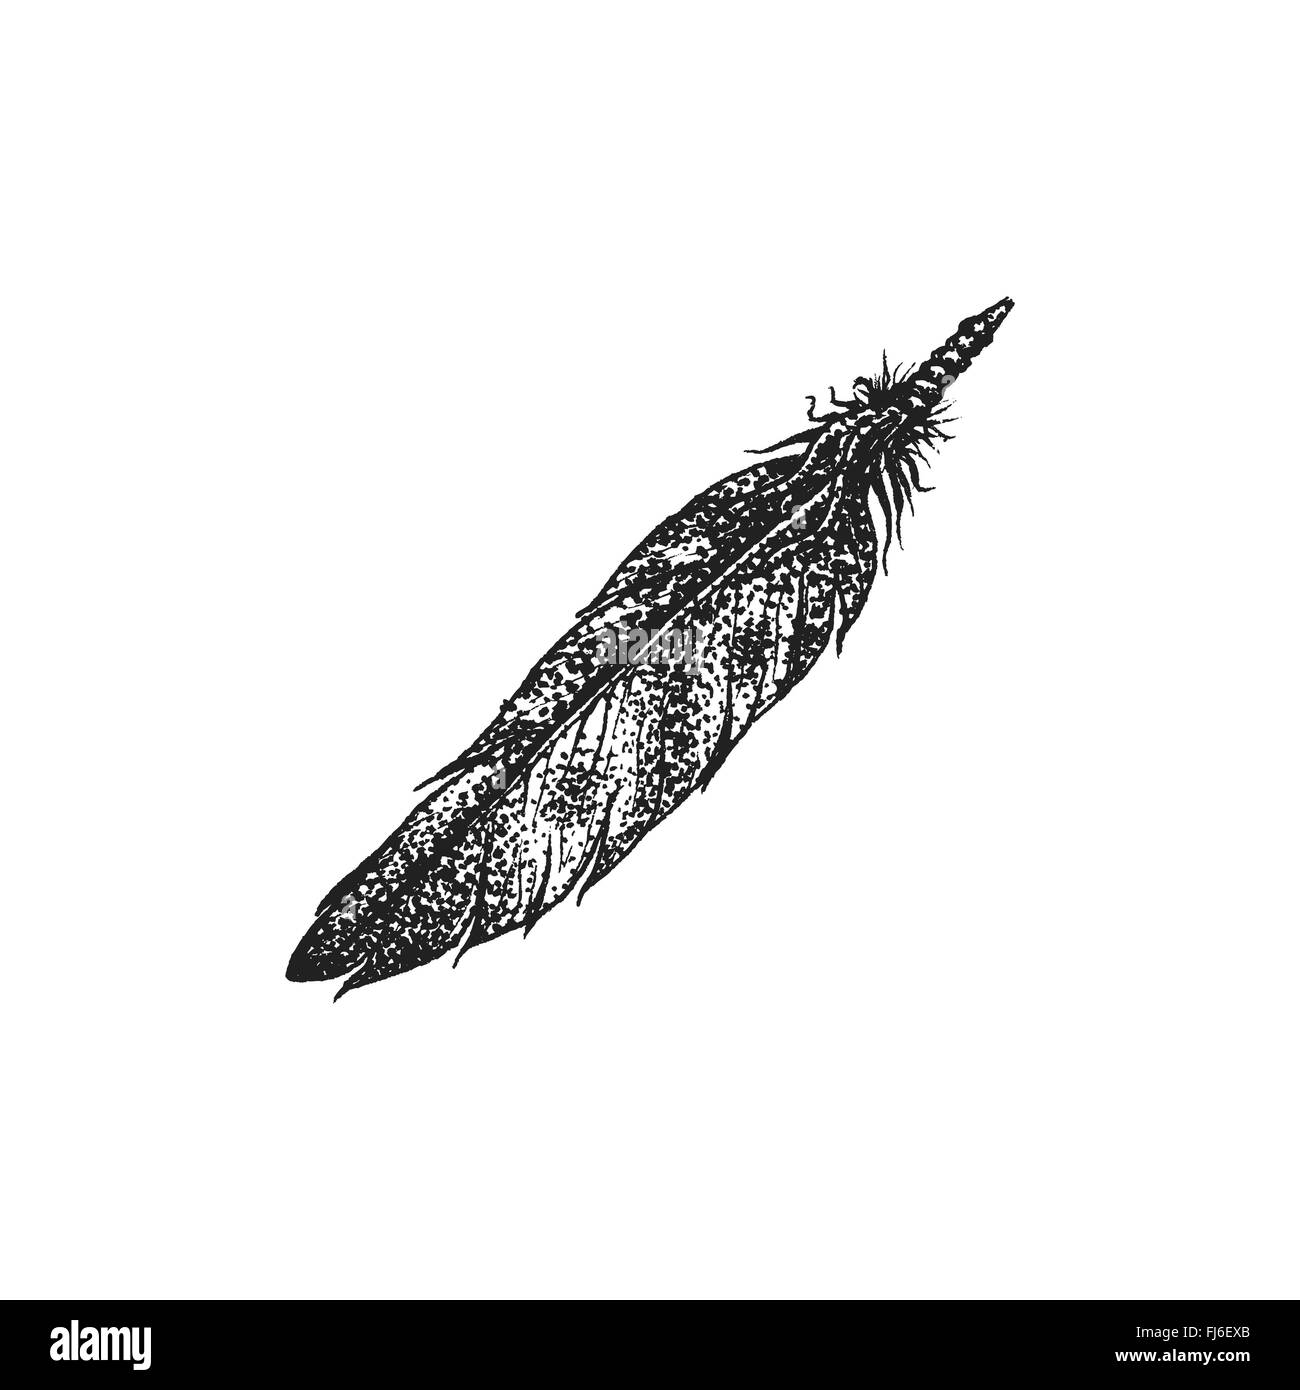 Vettore di colore nero monocromatico arte punteggiata retrò tattoo stile rotocalco native american feather isolato elemento decorativo realisti Illustrazione Vettoriale